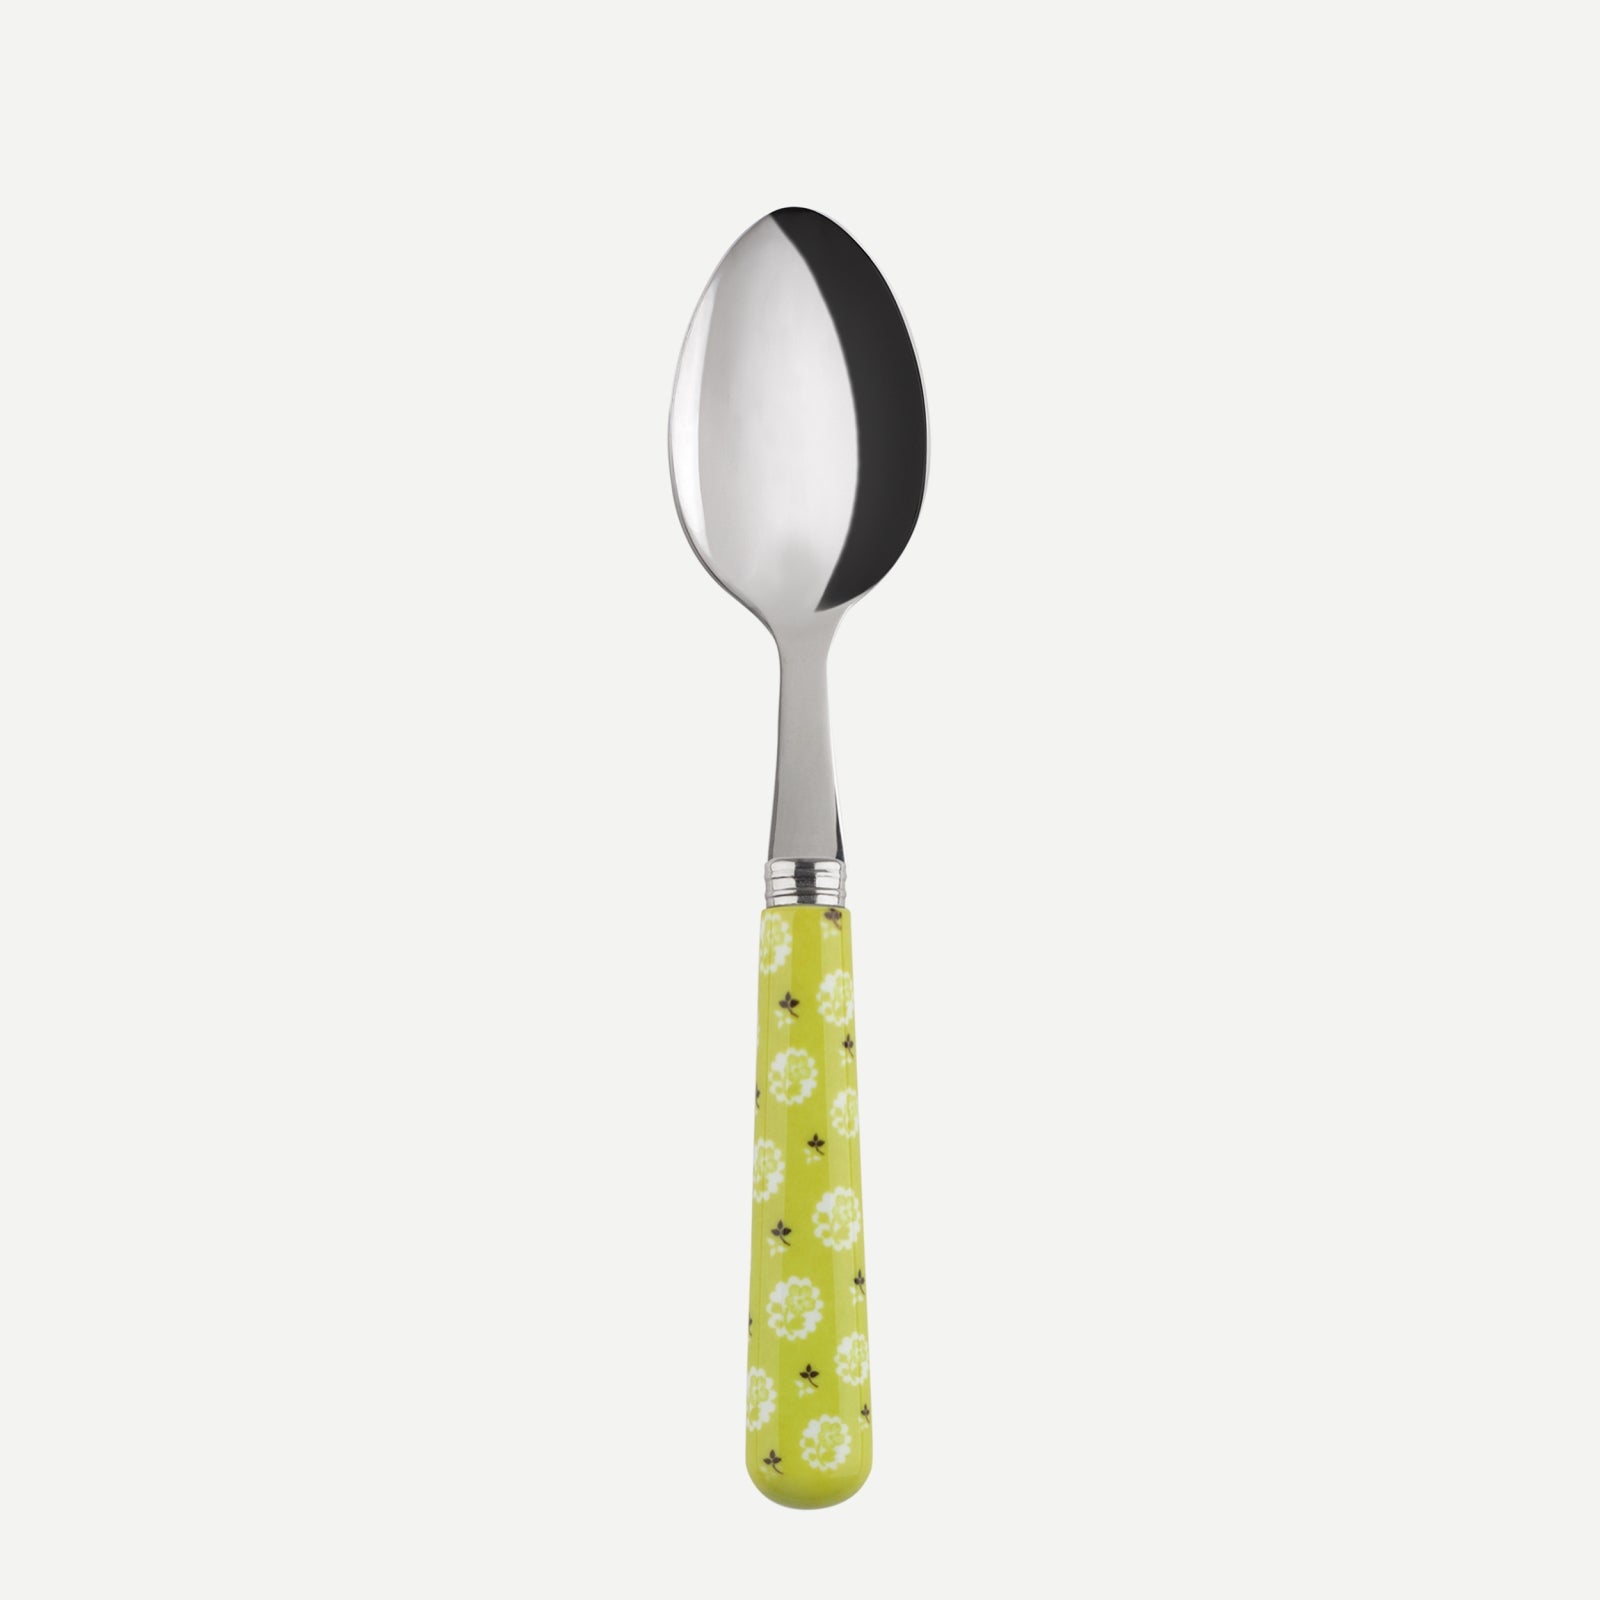 Demi-tasse spoon - Provencal - Light green